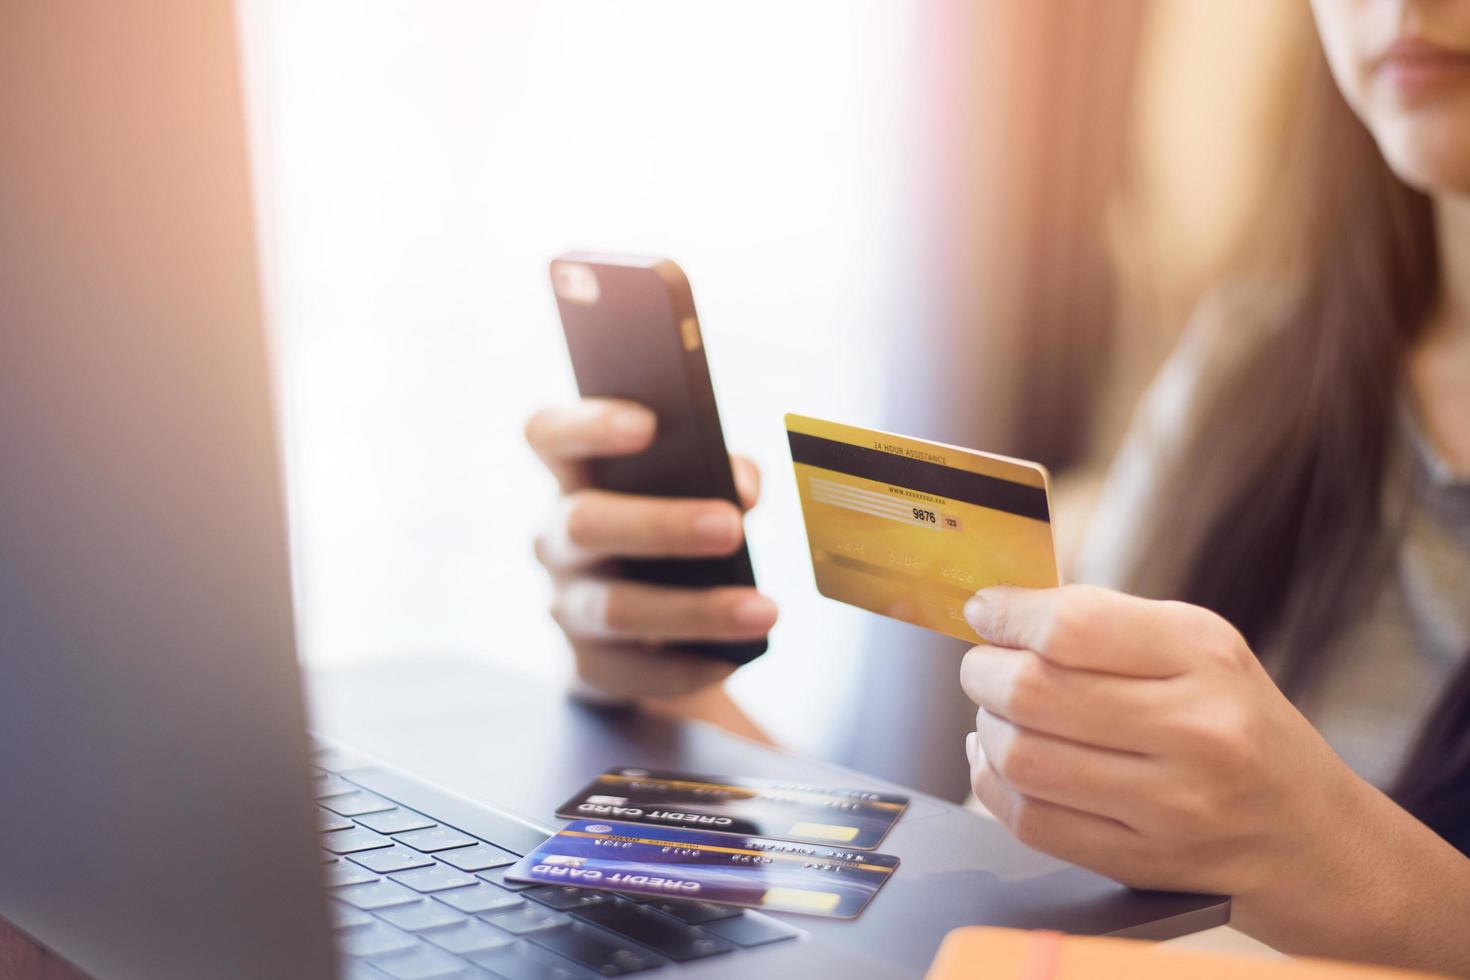 kvinna hand håller kreditkort, shopping online foto